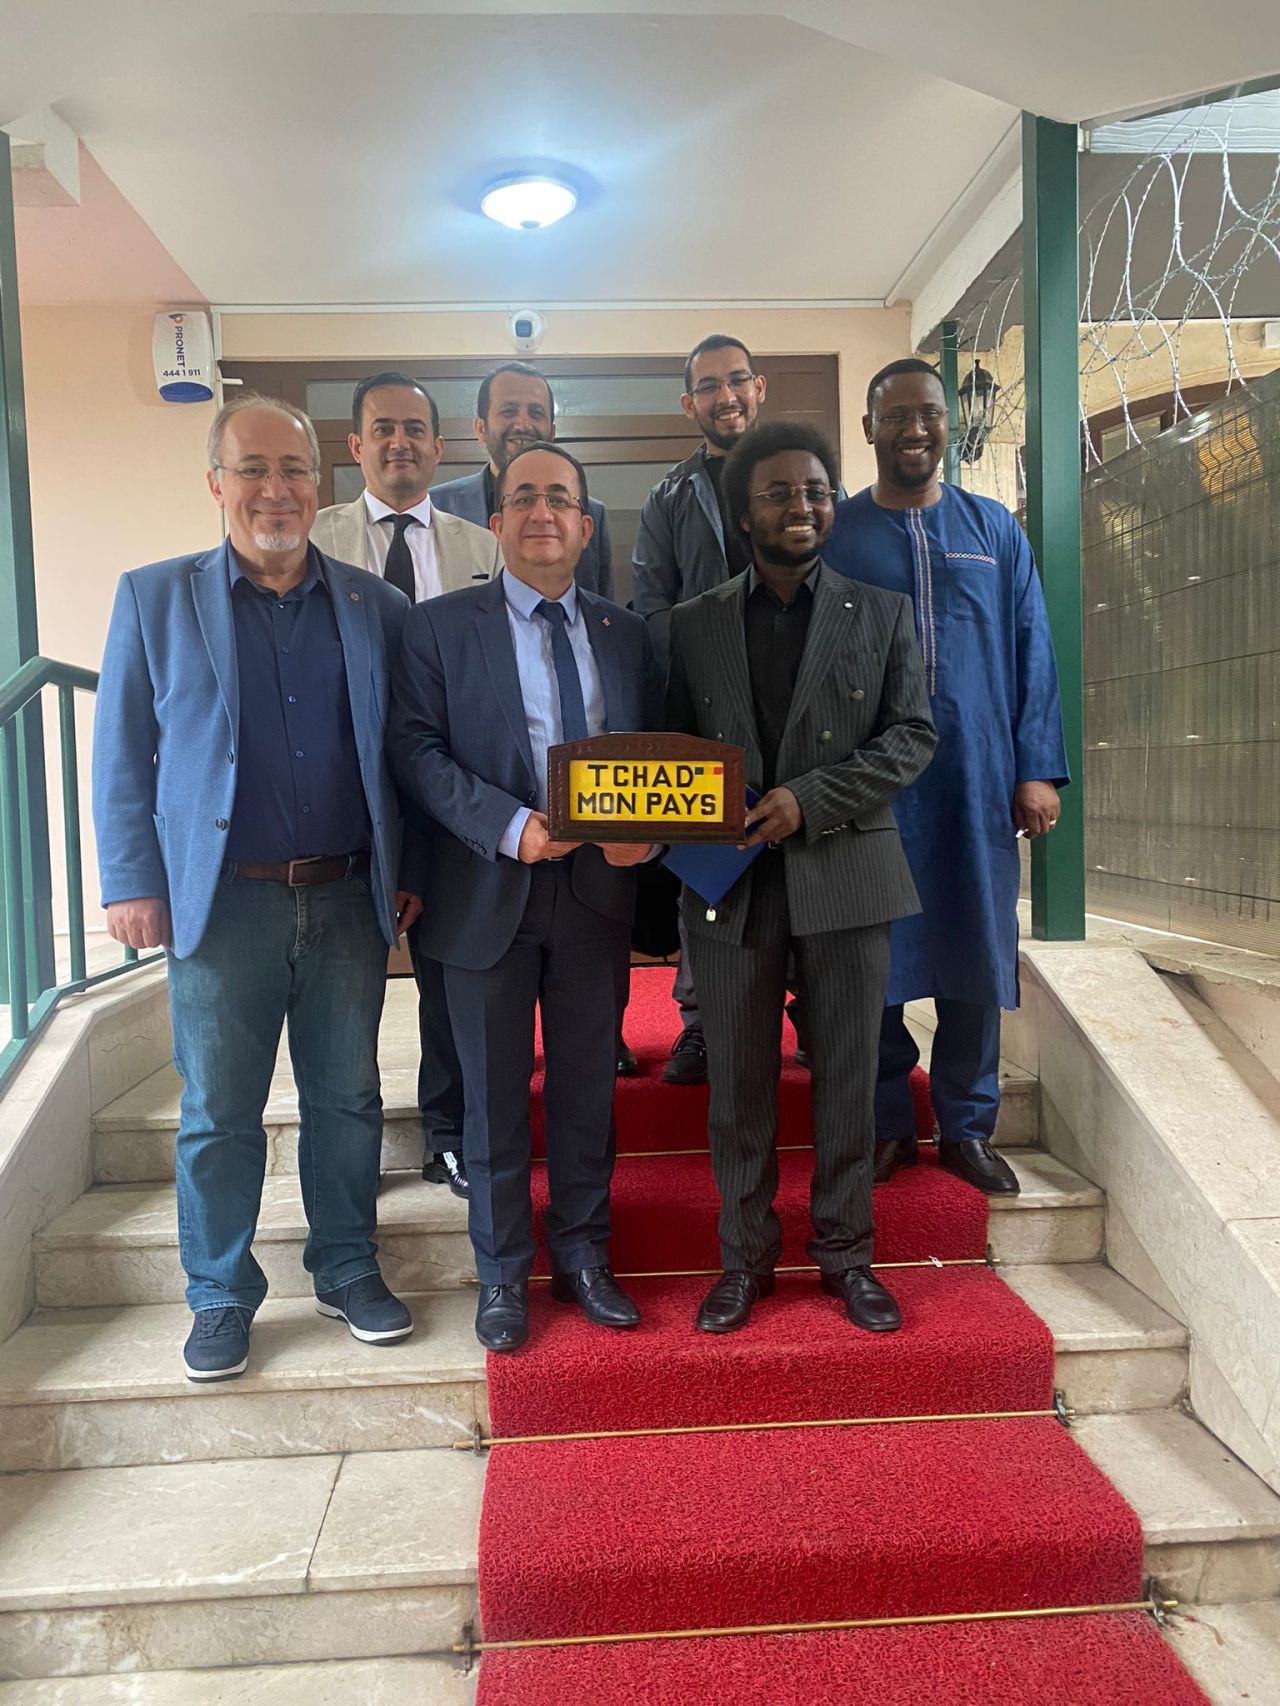 Le conseil d'administration de la société de machines agricoles Abollo s'est rendu à l'ambassade du Tchad en Turquie. || Abollo Agricultural Machinery 